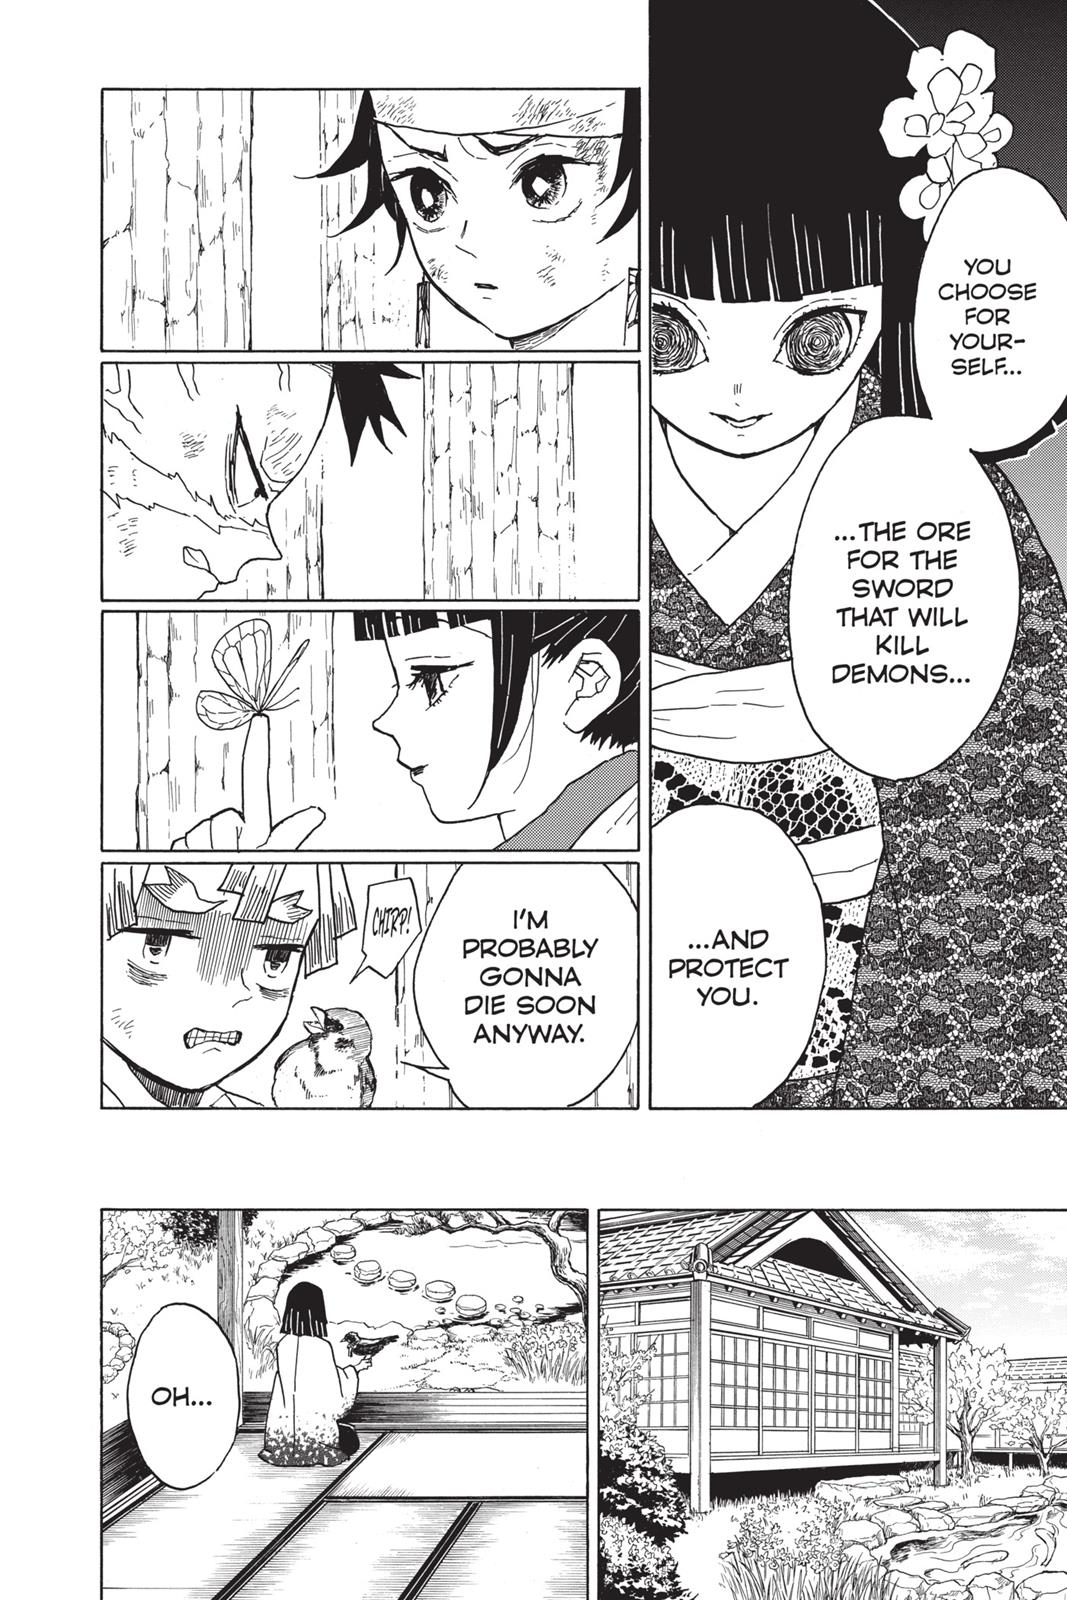 Demon Slayer Manga Manga Chapter - 8 - image 19